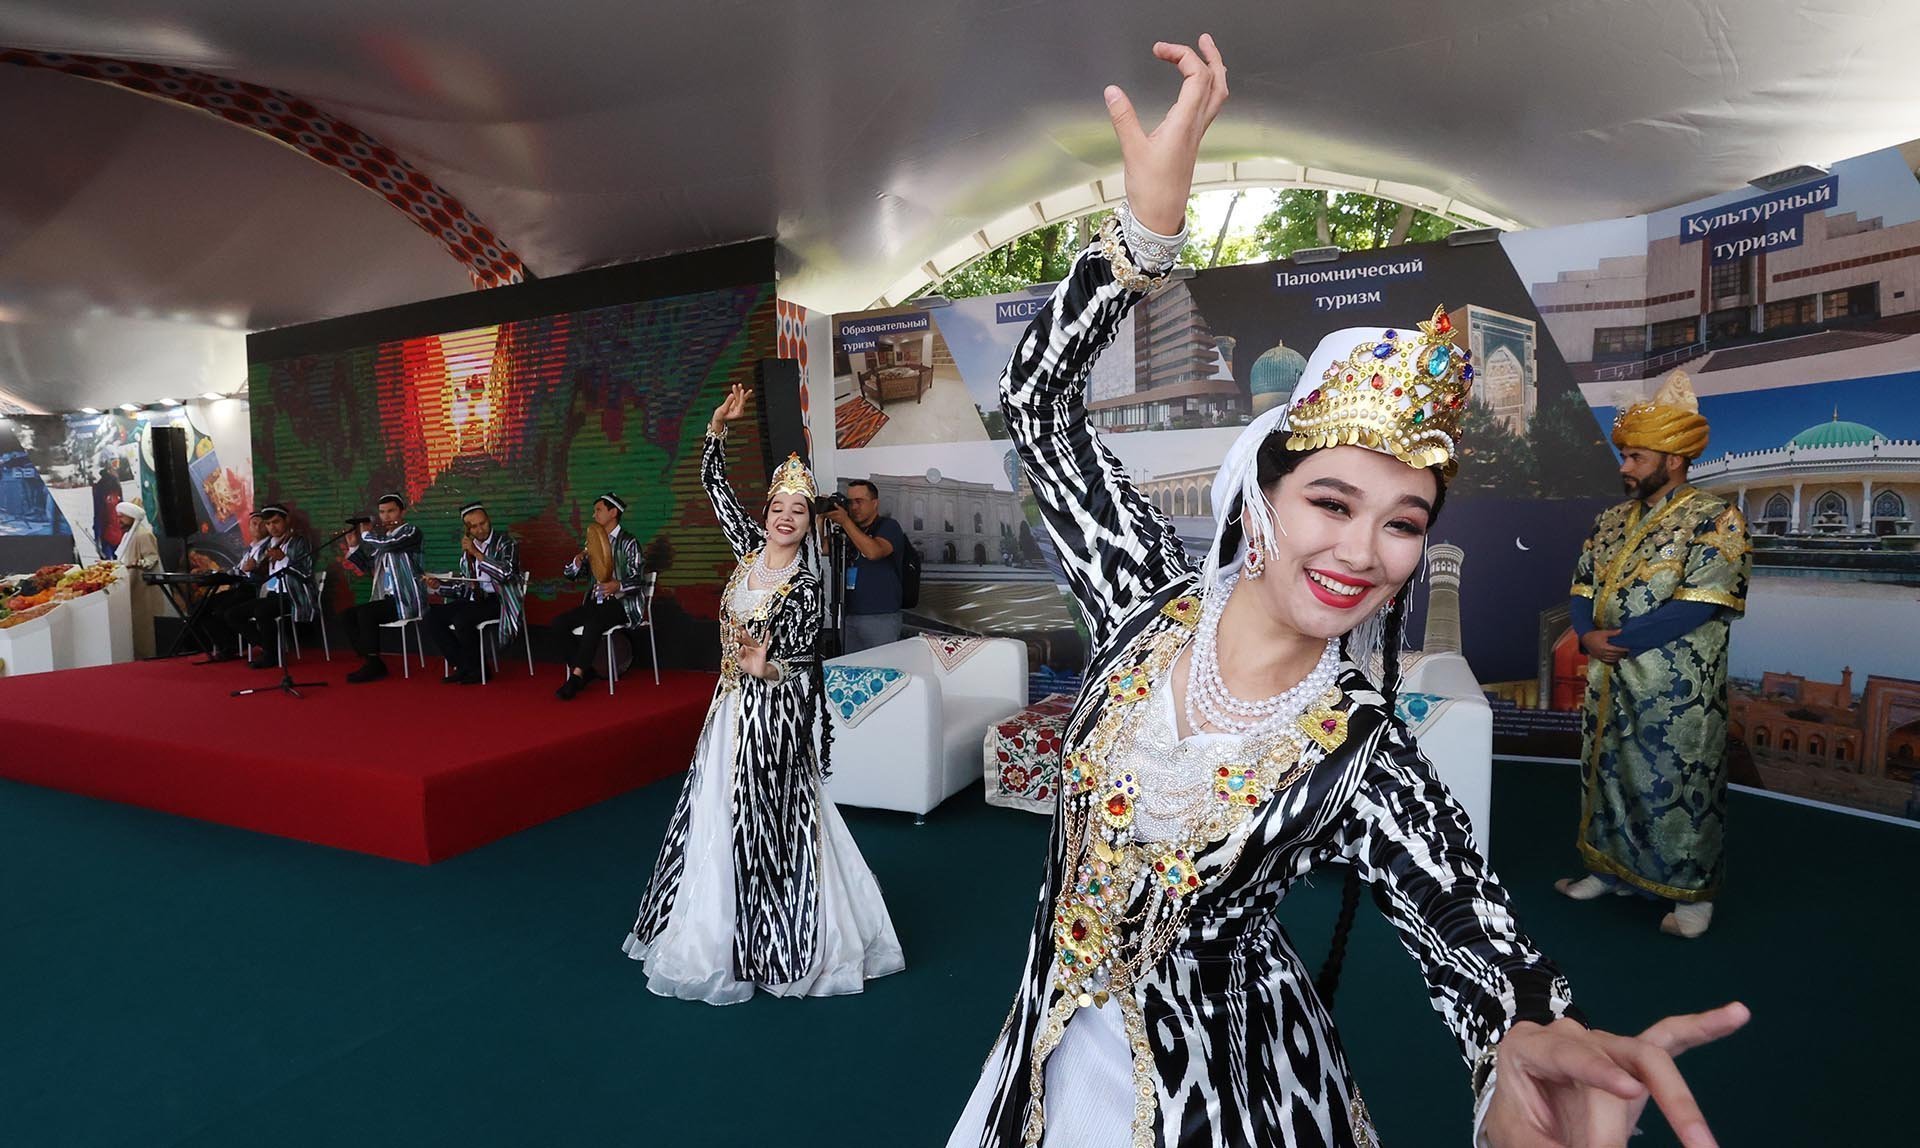 Участницы узбекского национального ансамбля выступают на стенде "Узбекистан"